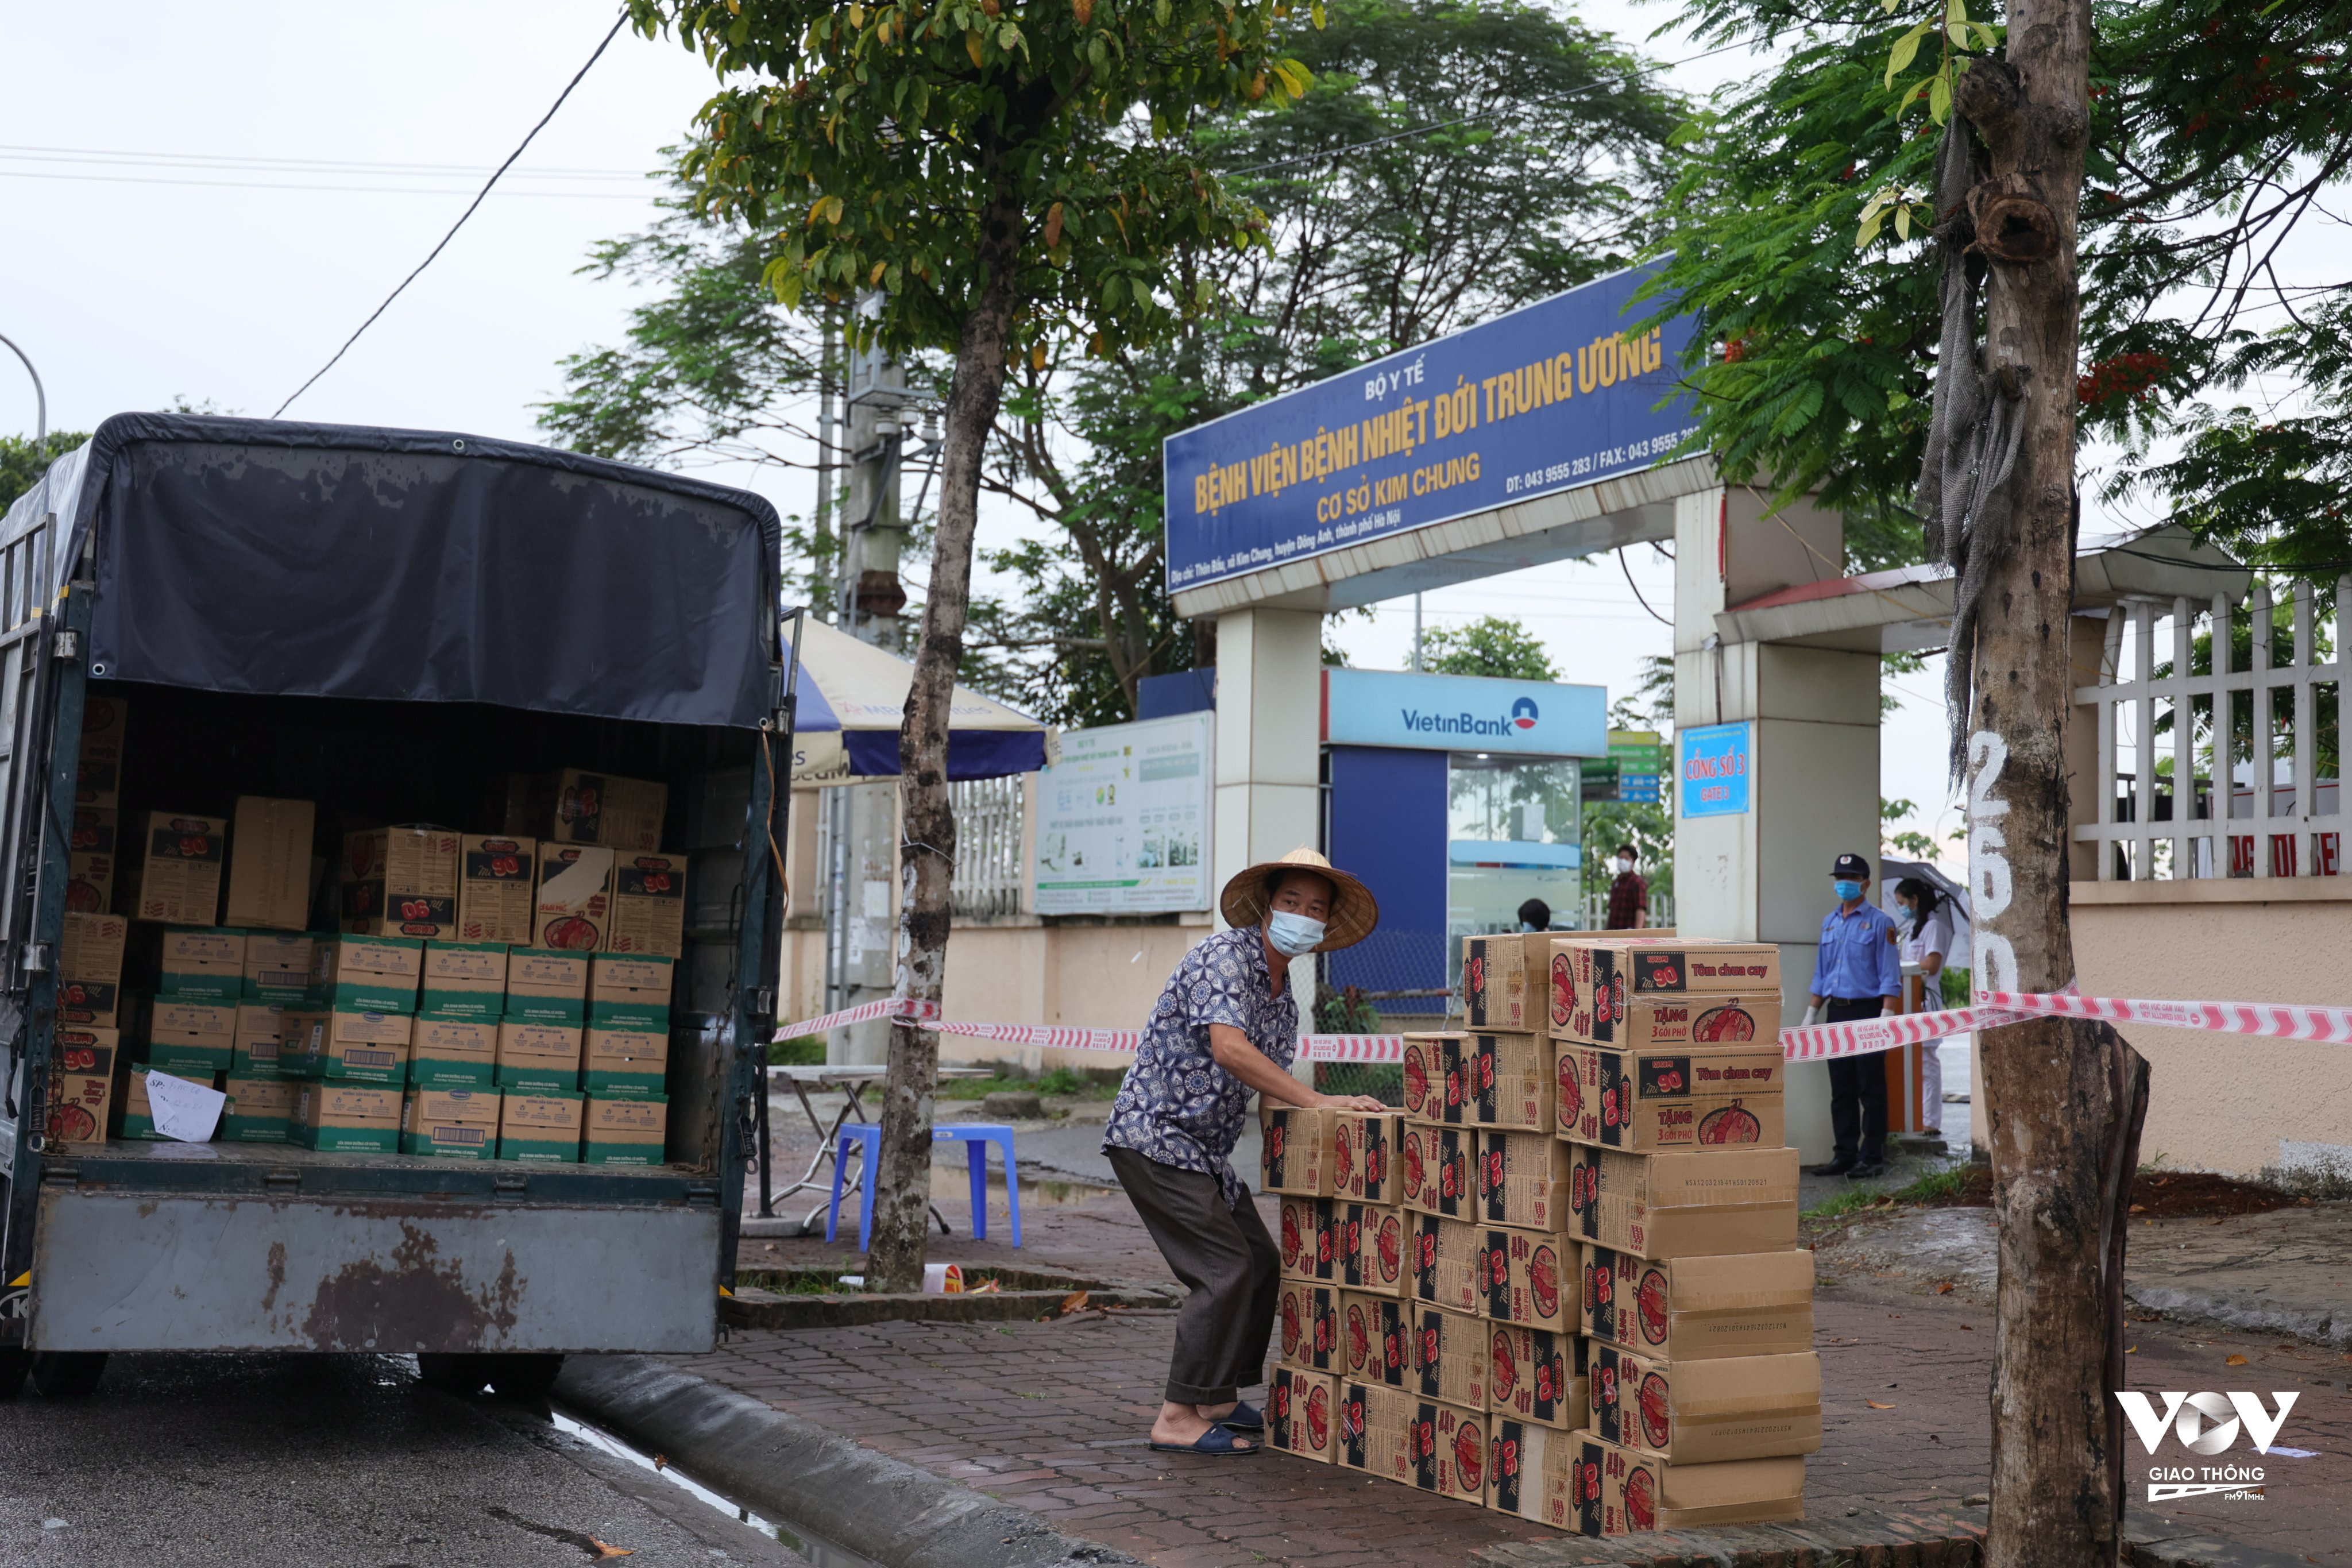 3, Số lượng lương thực thực phẩm từ UBND TP Hà Nội được vận chuyển trên 2 xe tải, gồm 2000 quả trứng, 100 thùng mì và 50 thùng sữa đặc.